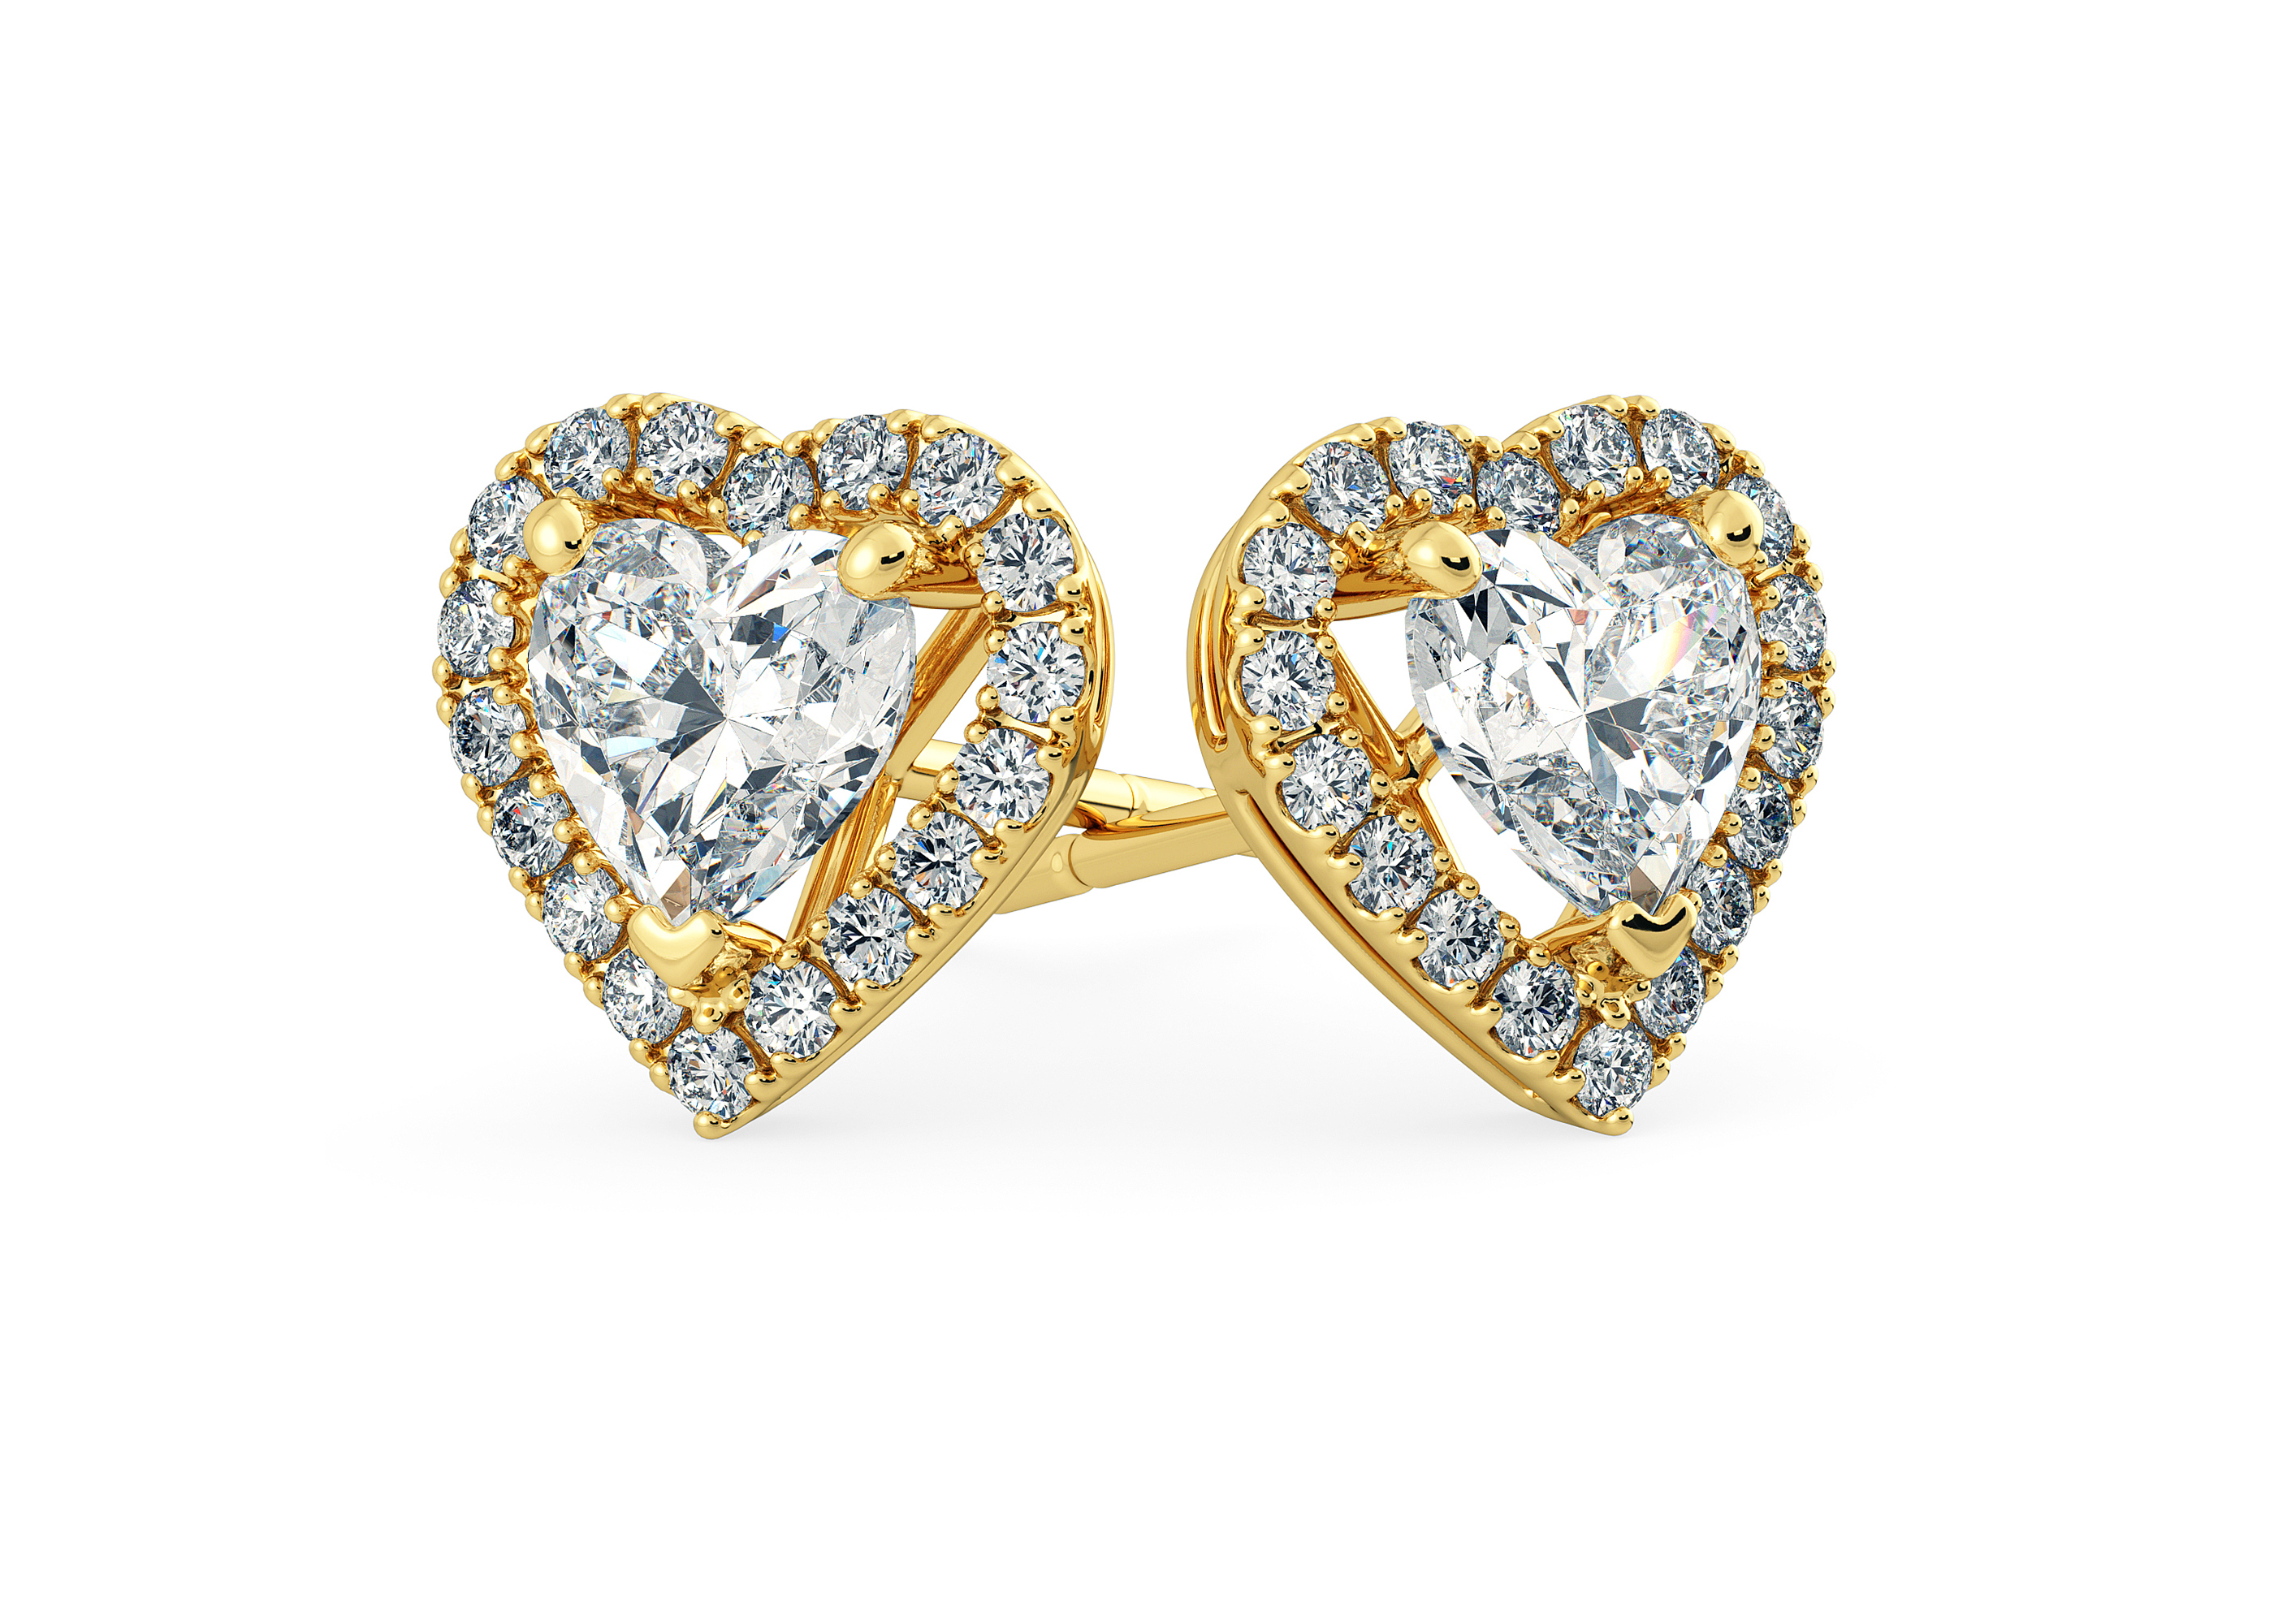 Bijou Heart Diamond Stud Earrings in 18K Yellow Gold with Screw Backs